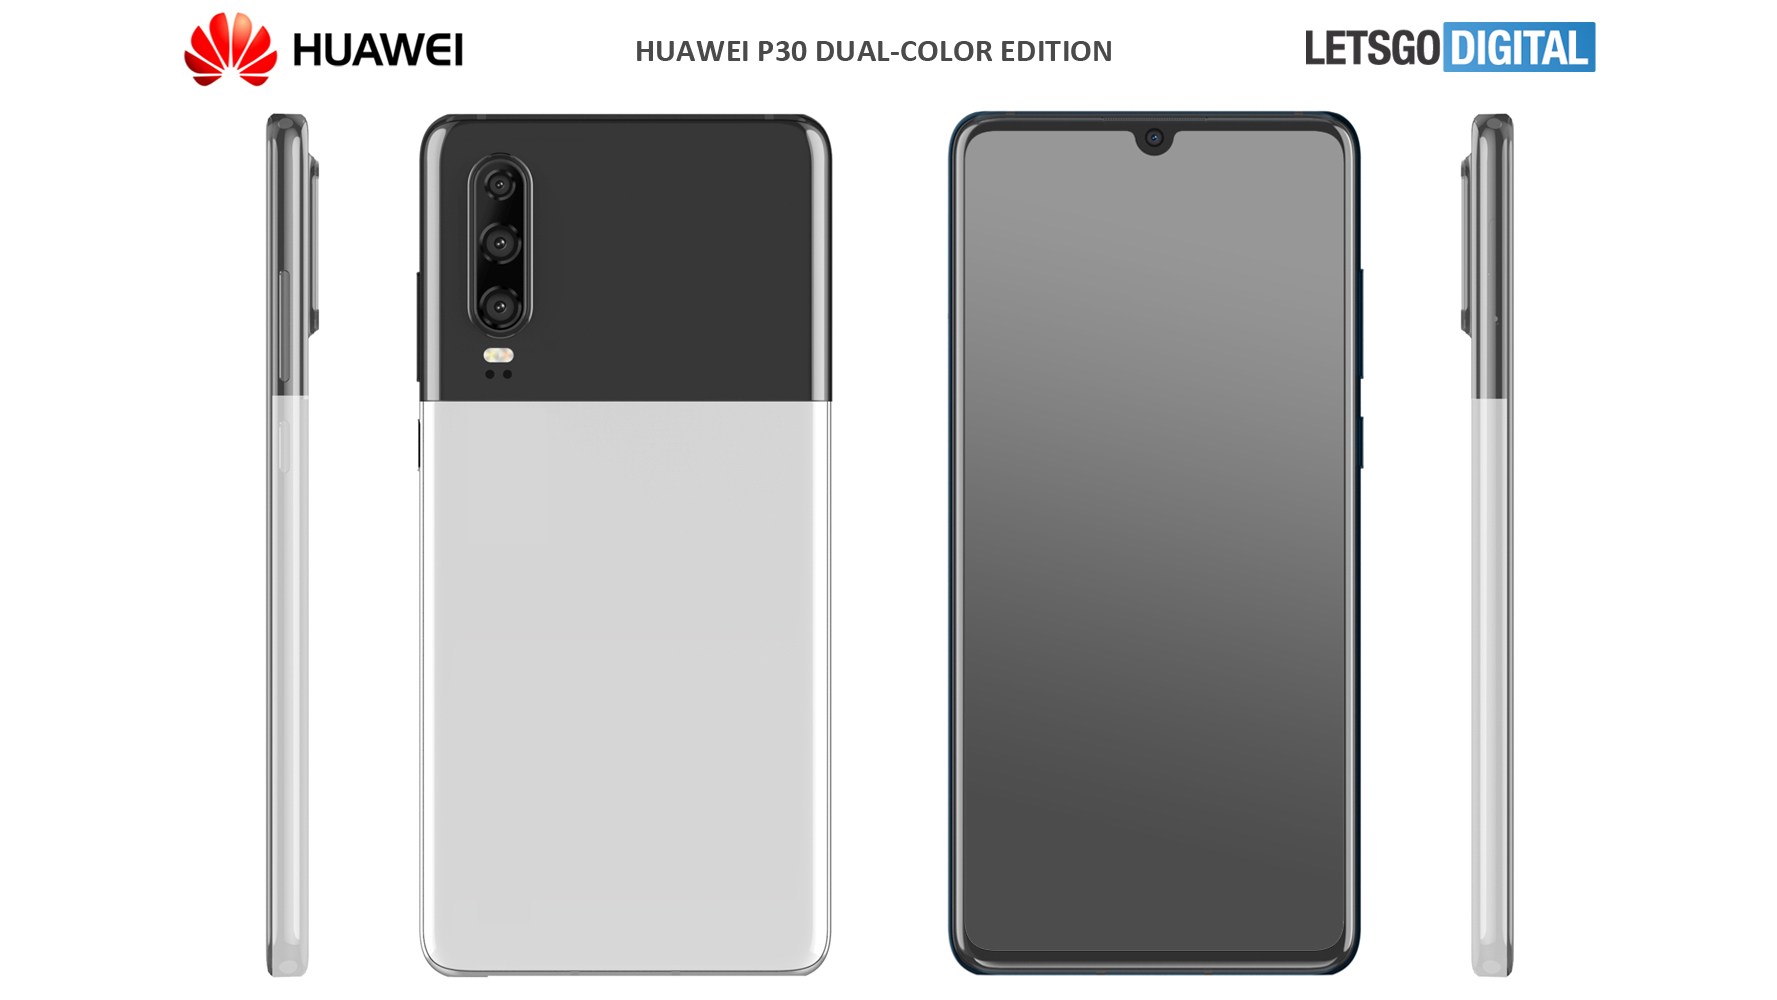 Новая отделка в 2-х цветном стиле "Pixel" для Huawei P30 [RUMOR]